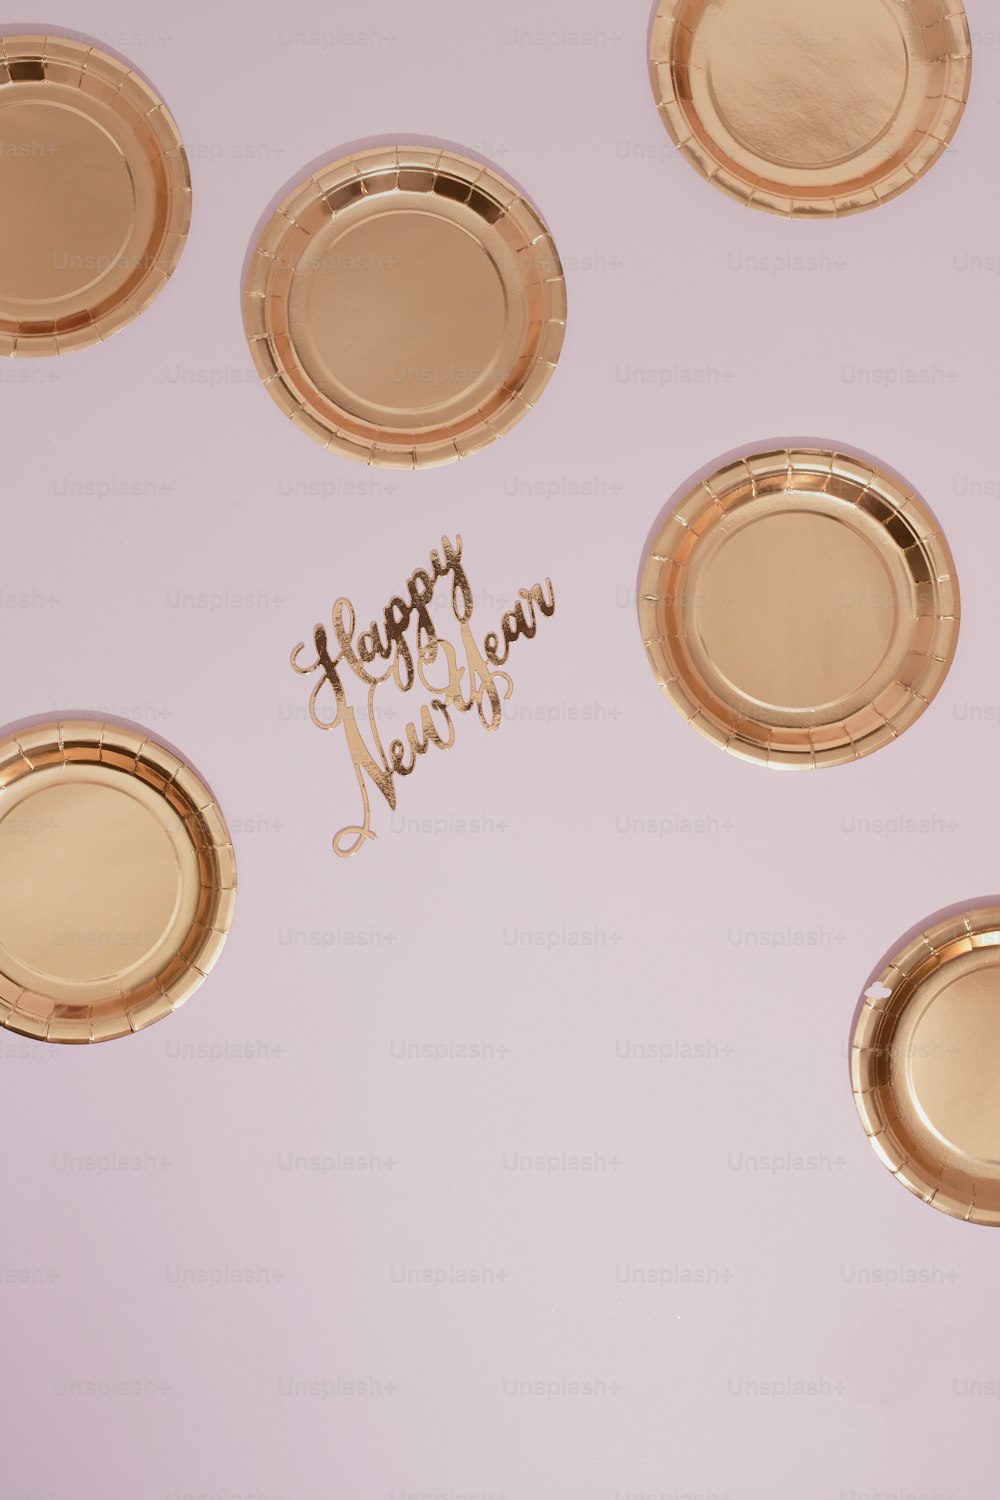 Frohes neues Jahr auf einem Tisch mit Goldplatten geschrieben